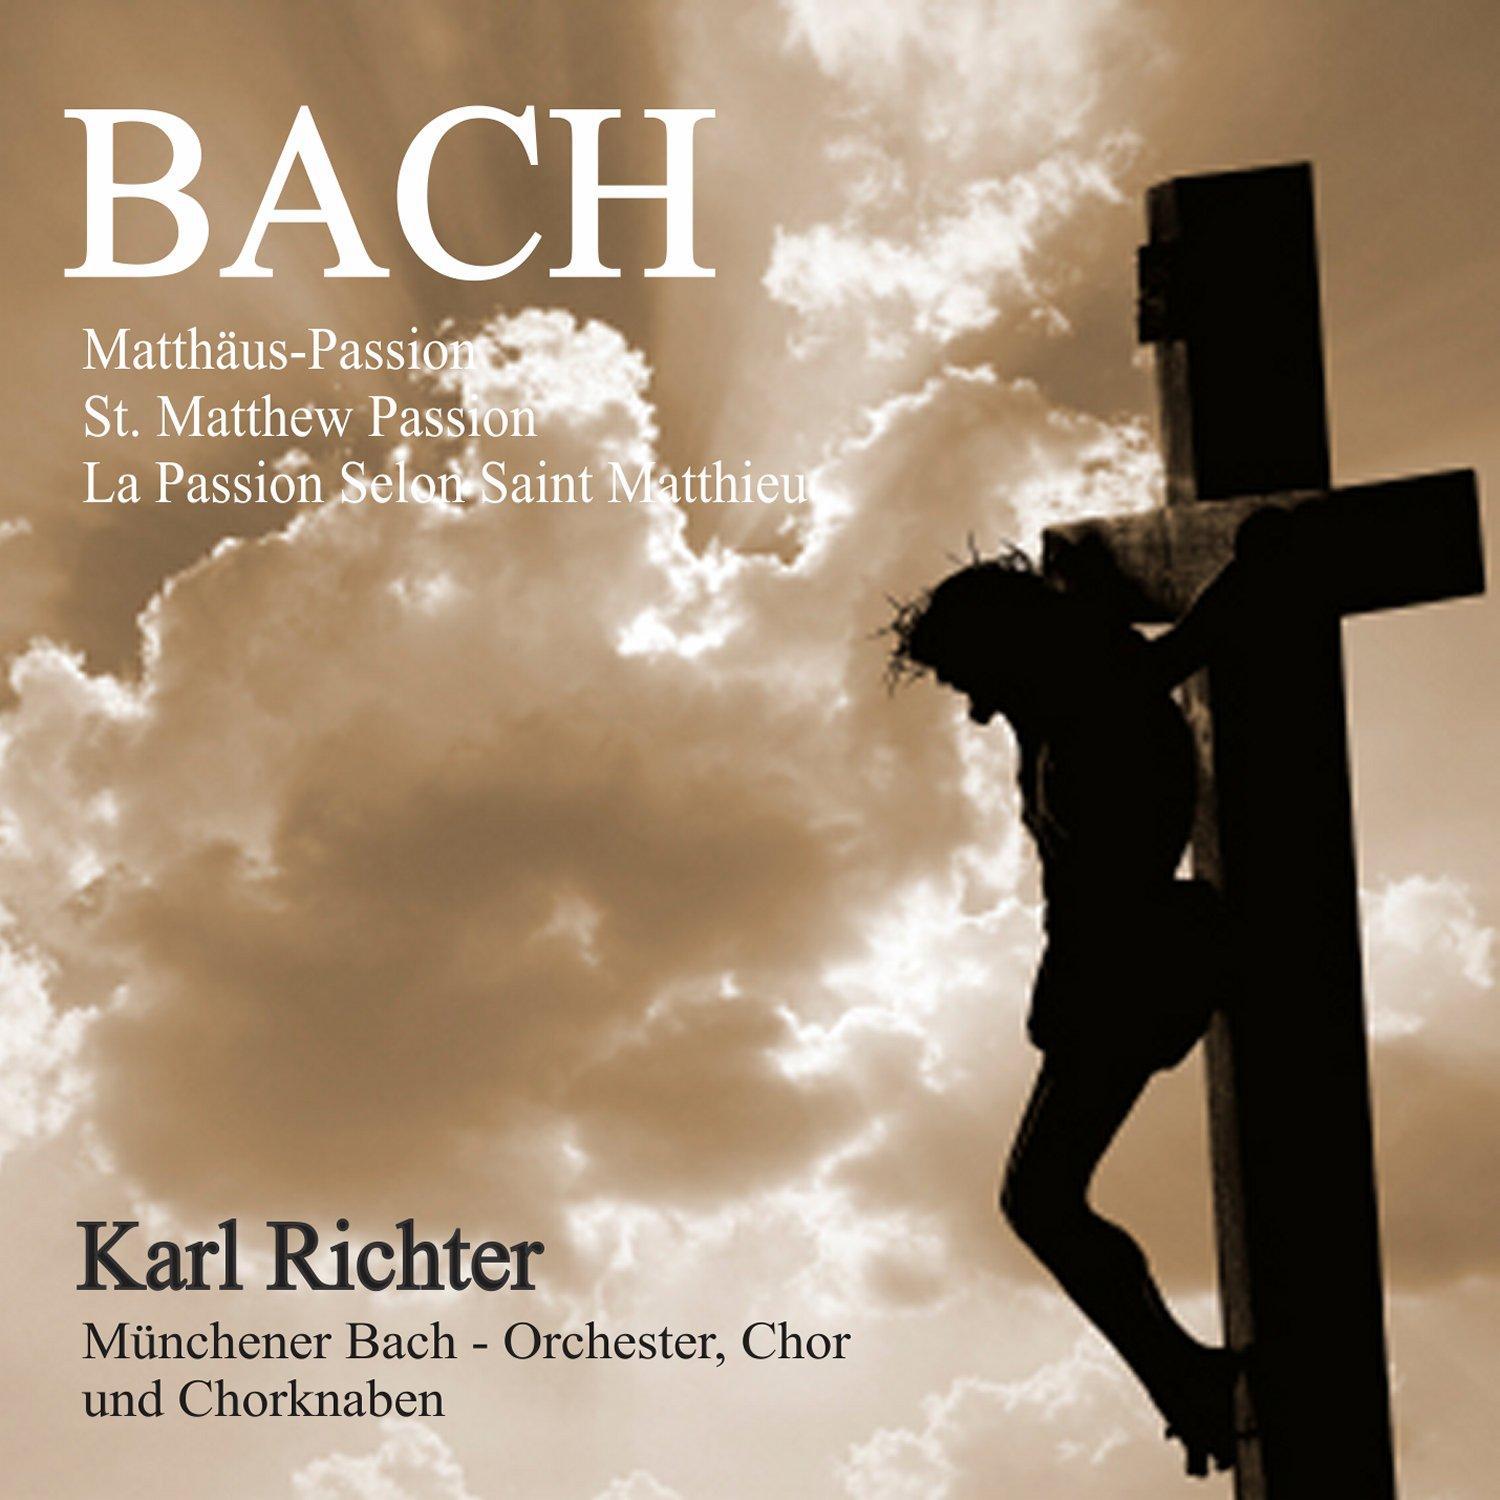 Bach: Matth usPassion, BWV 244 St. Matthew Passion La Passion selon Saint Matthieu